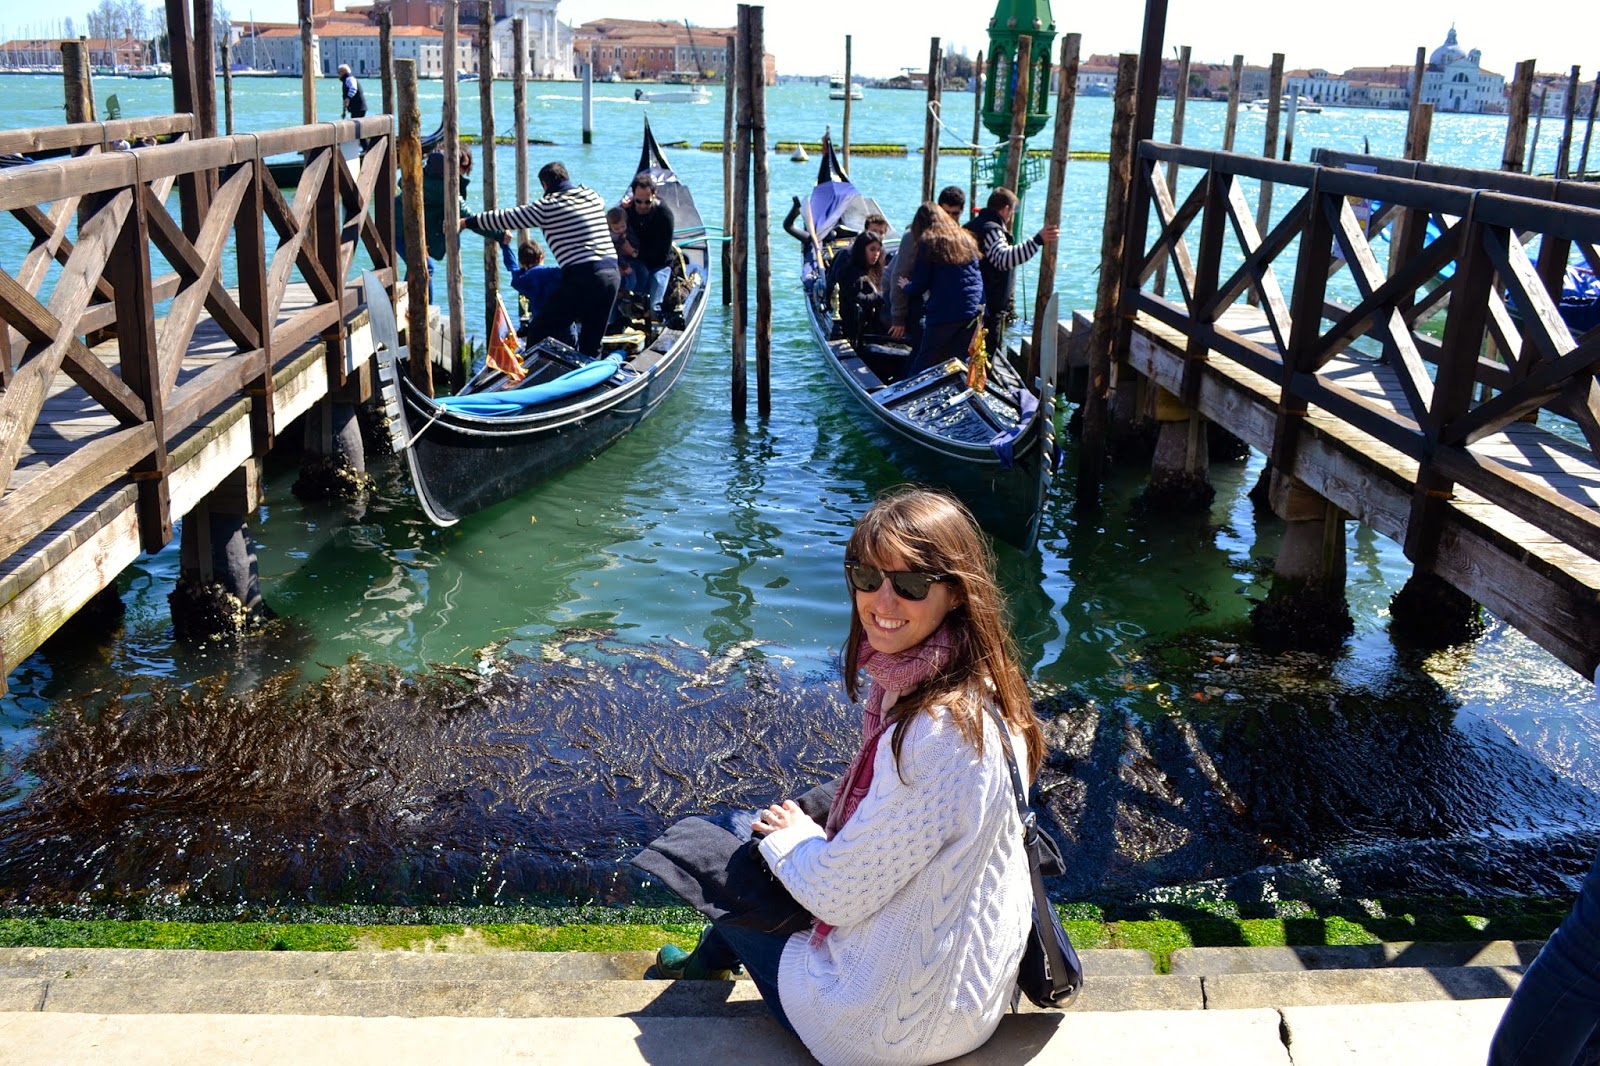 Gran canal Venecia Italia 